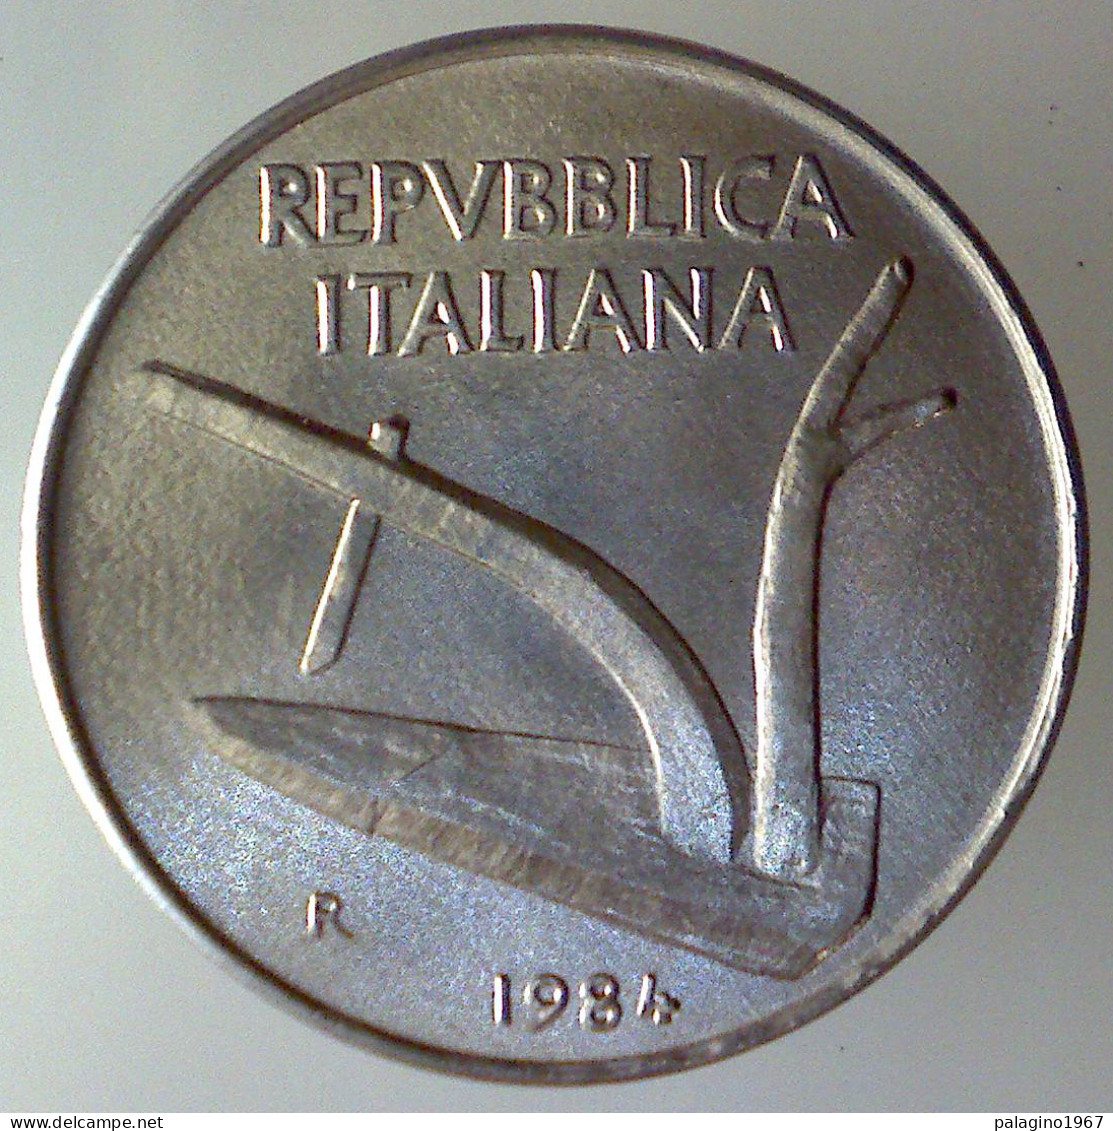 REPUBBLICA ITALIANA 10 Lire Spighe 1984 FDC  - 10 Liras